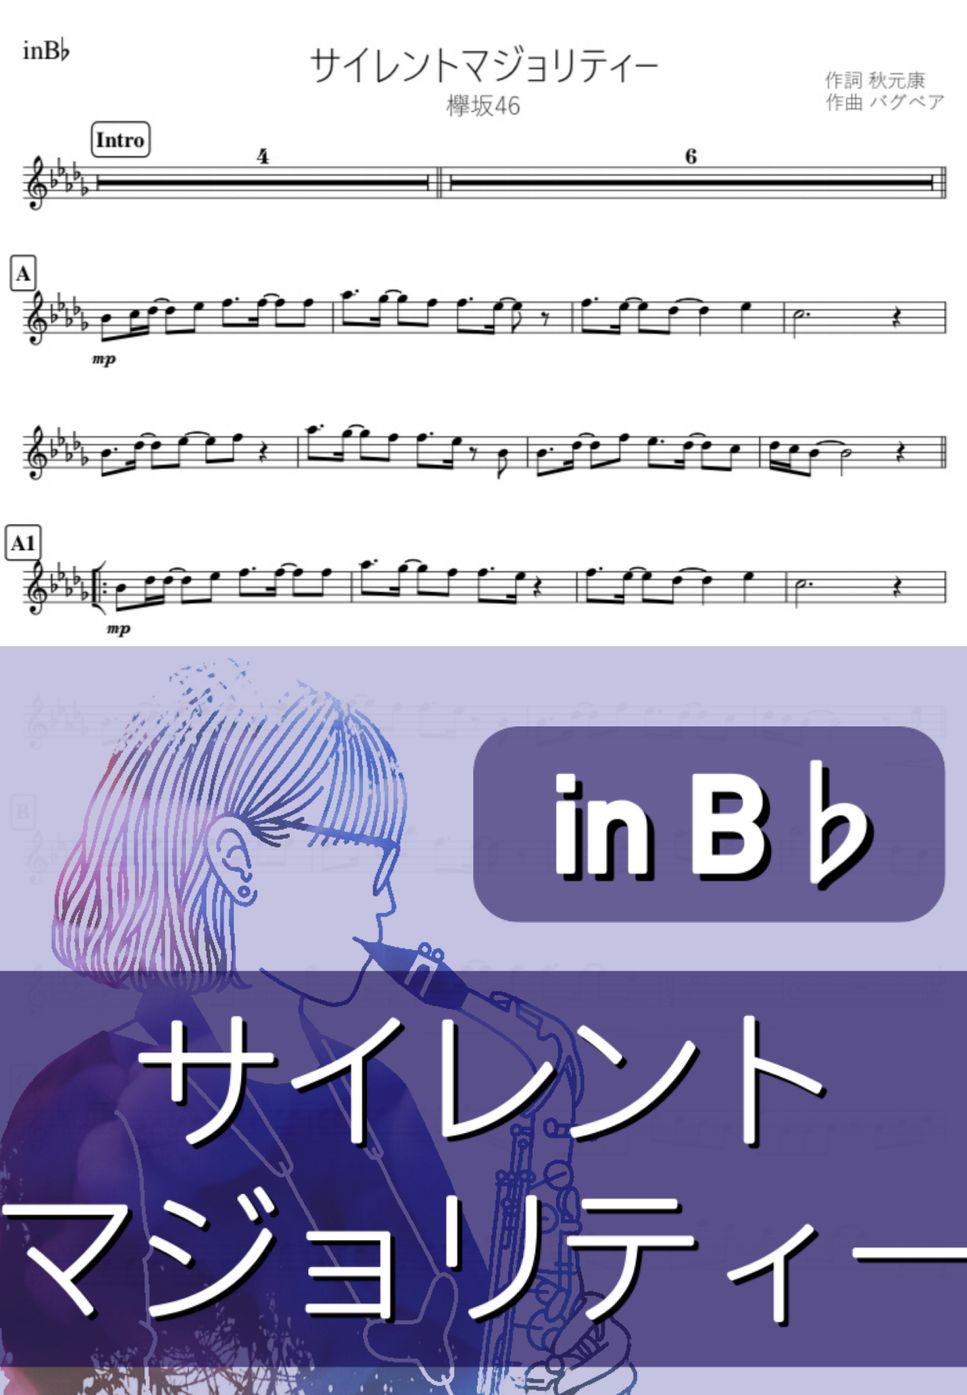 欅坂46 - サイレントマジョリティー (B♭) by kanamusic